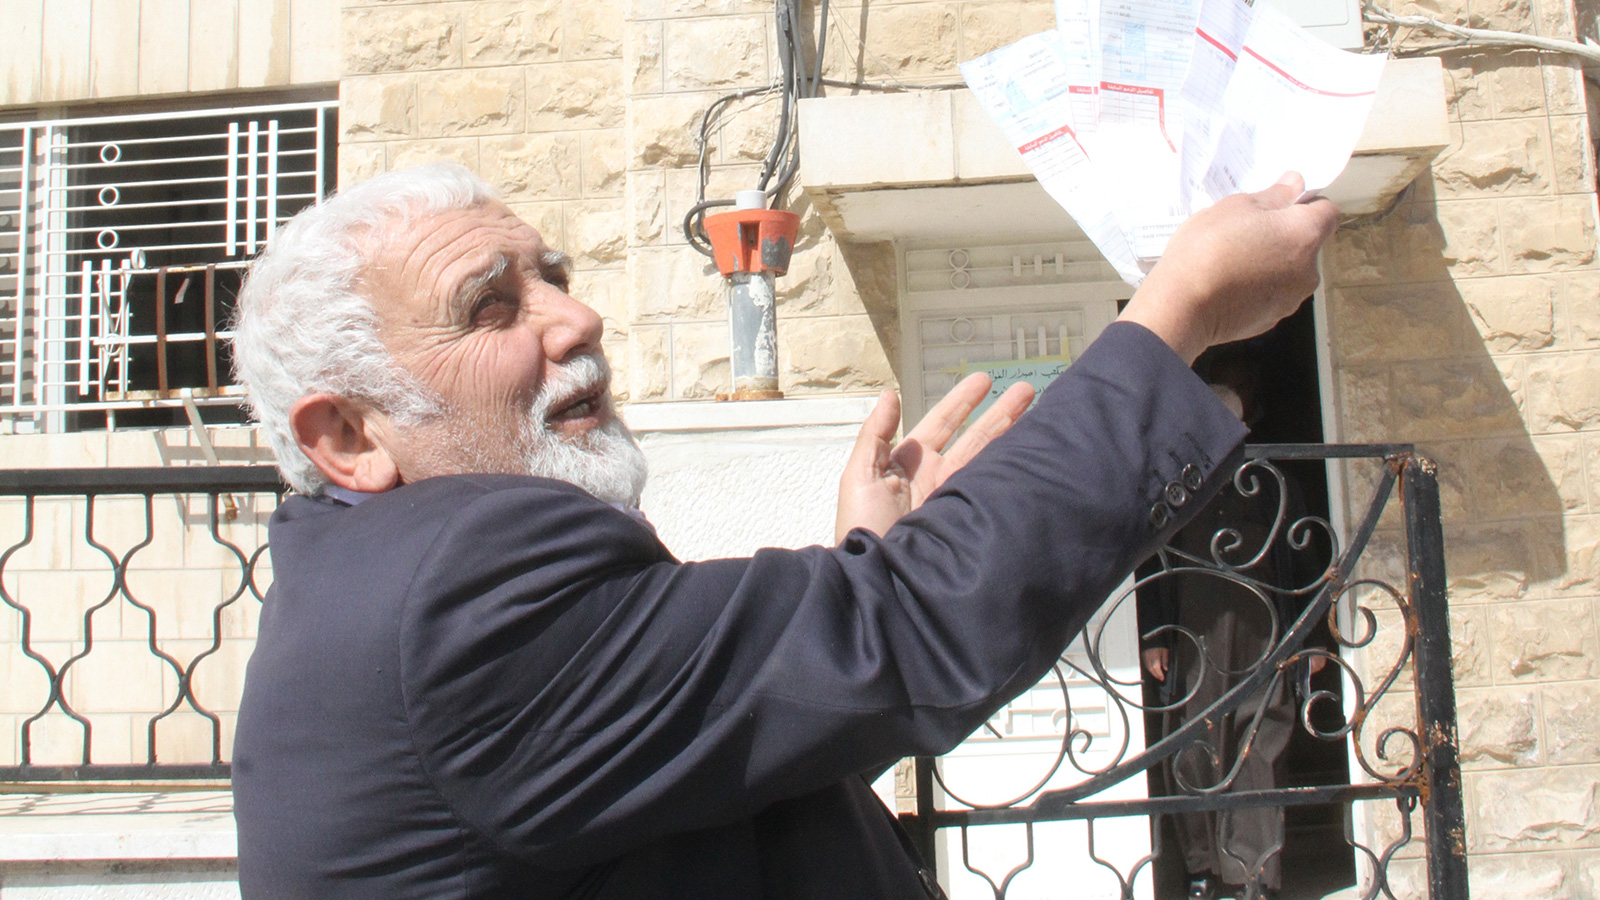 مواطن أردني يحتج على ارتفاع قيمة فواتير الكهرباء بطريقته الخاصة (الجزيرة نت)